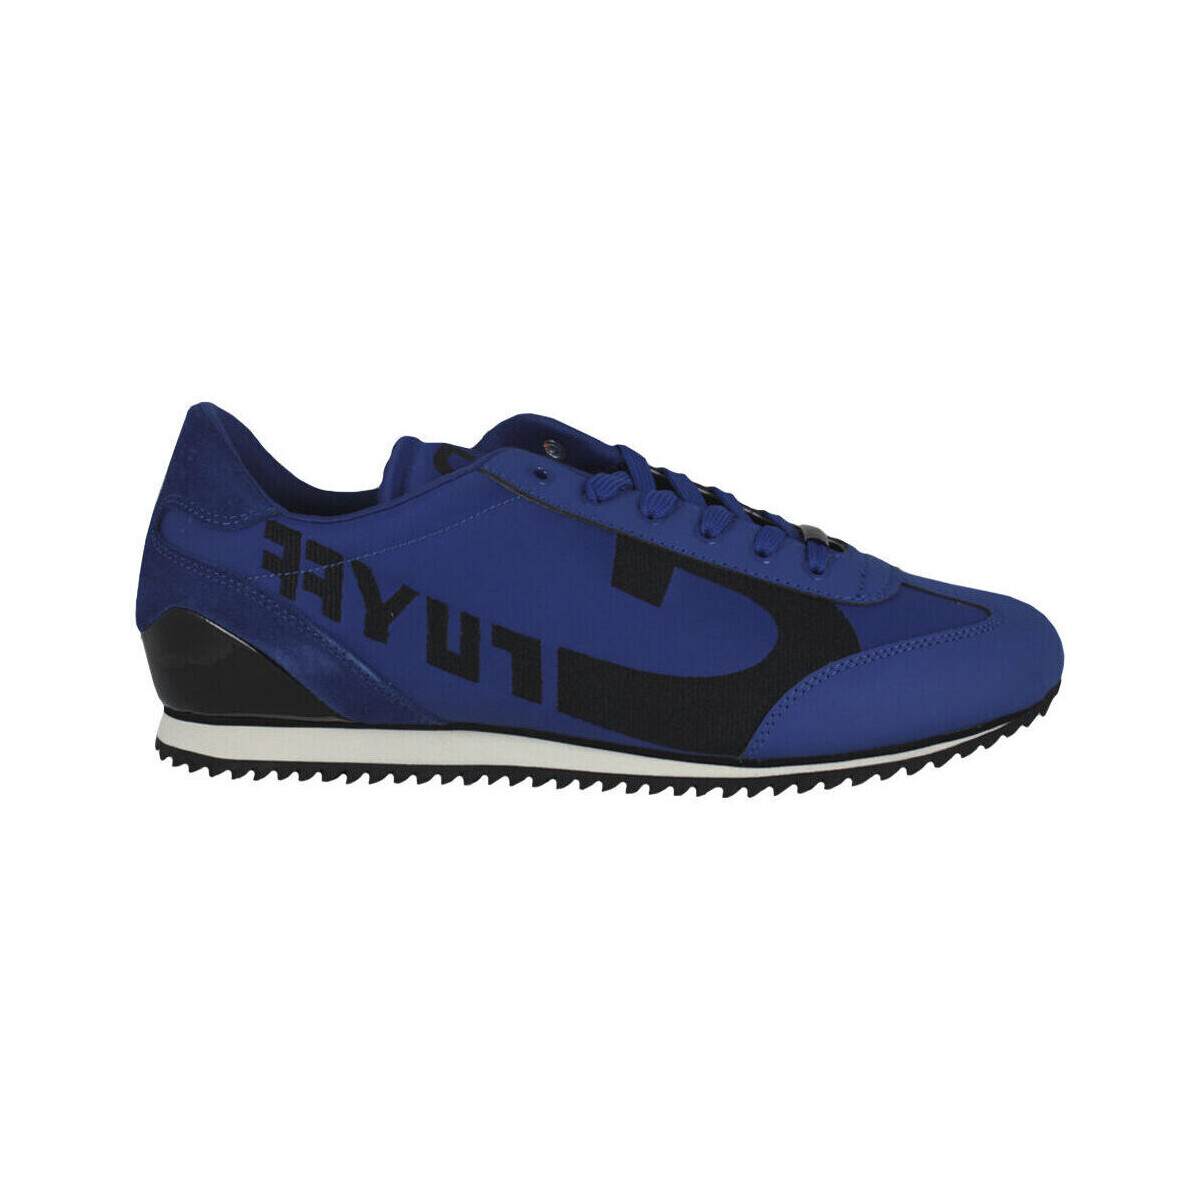 Chaussures Homme Baskets mode Cruyff Ultra CC7470201 Azul Bleu